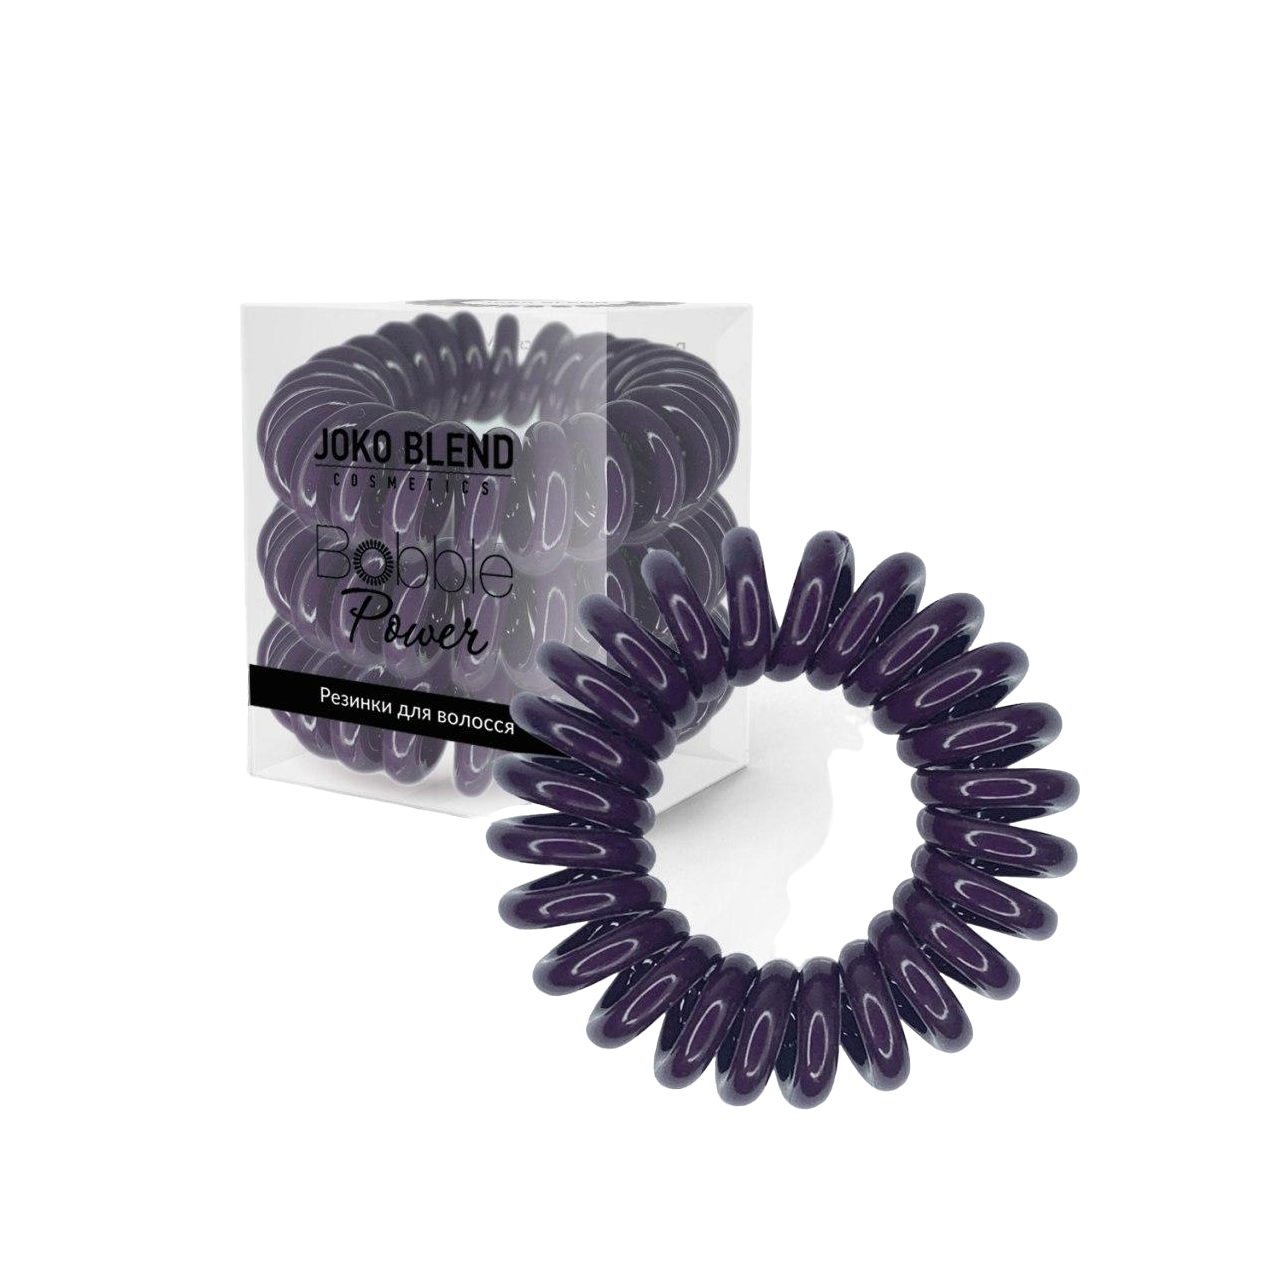 Набор резинок для волос Joko Blend Power Bobble Lilac, фиолетовый, 3 шт. - фото 1